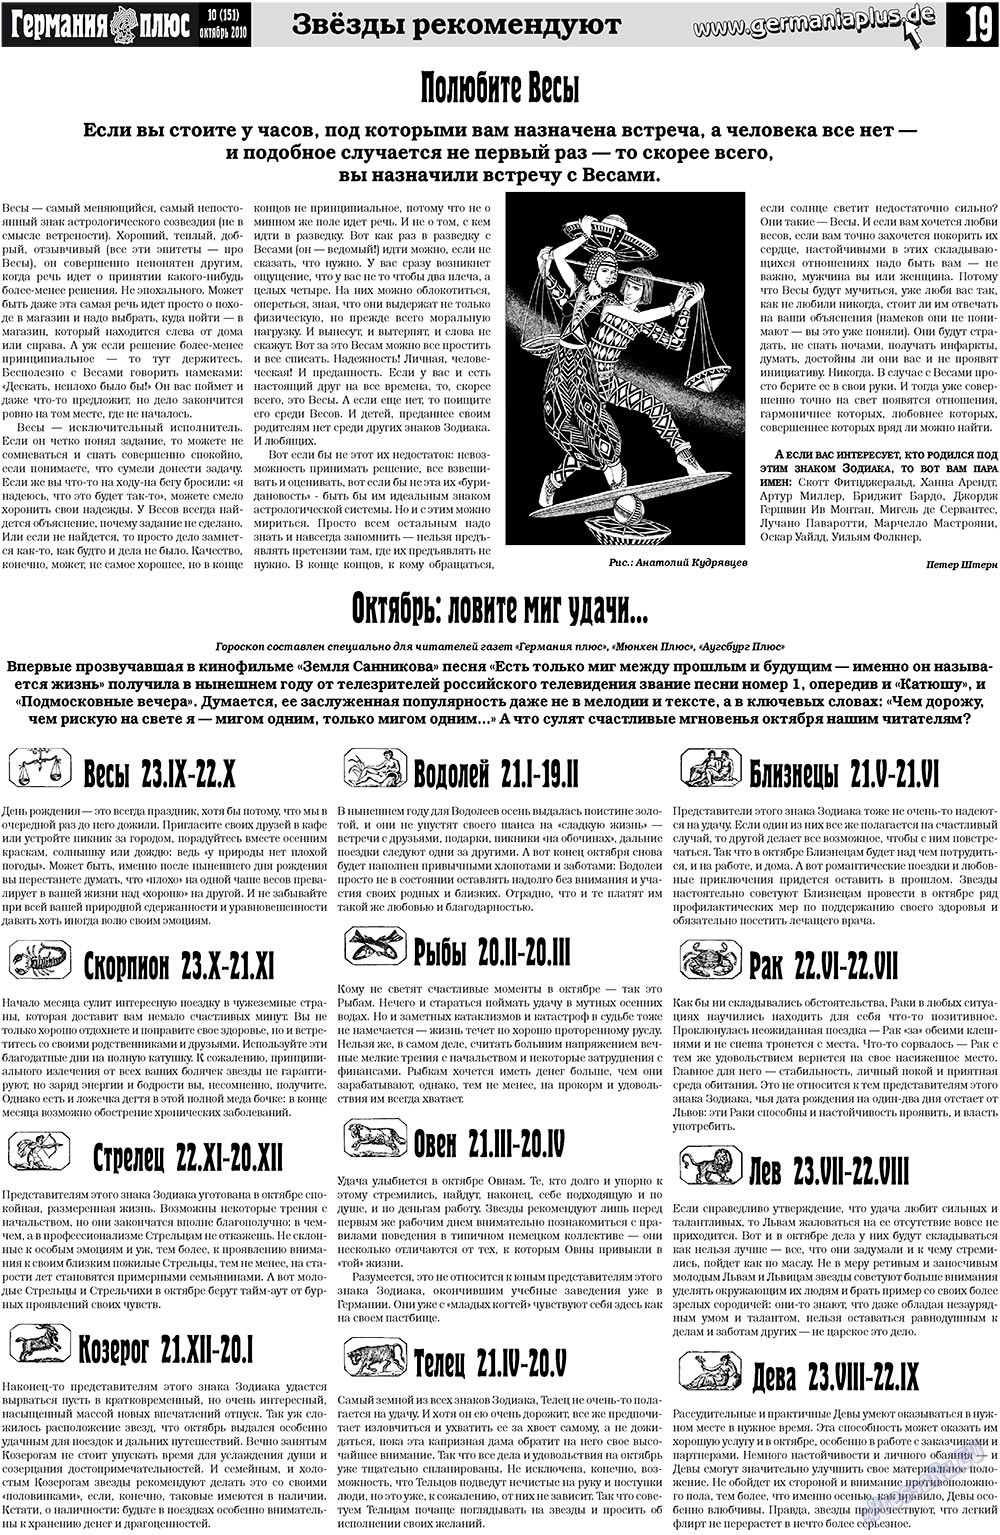 Германия плюс (газета). 2010 год, номер 10, стр. 19